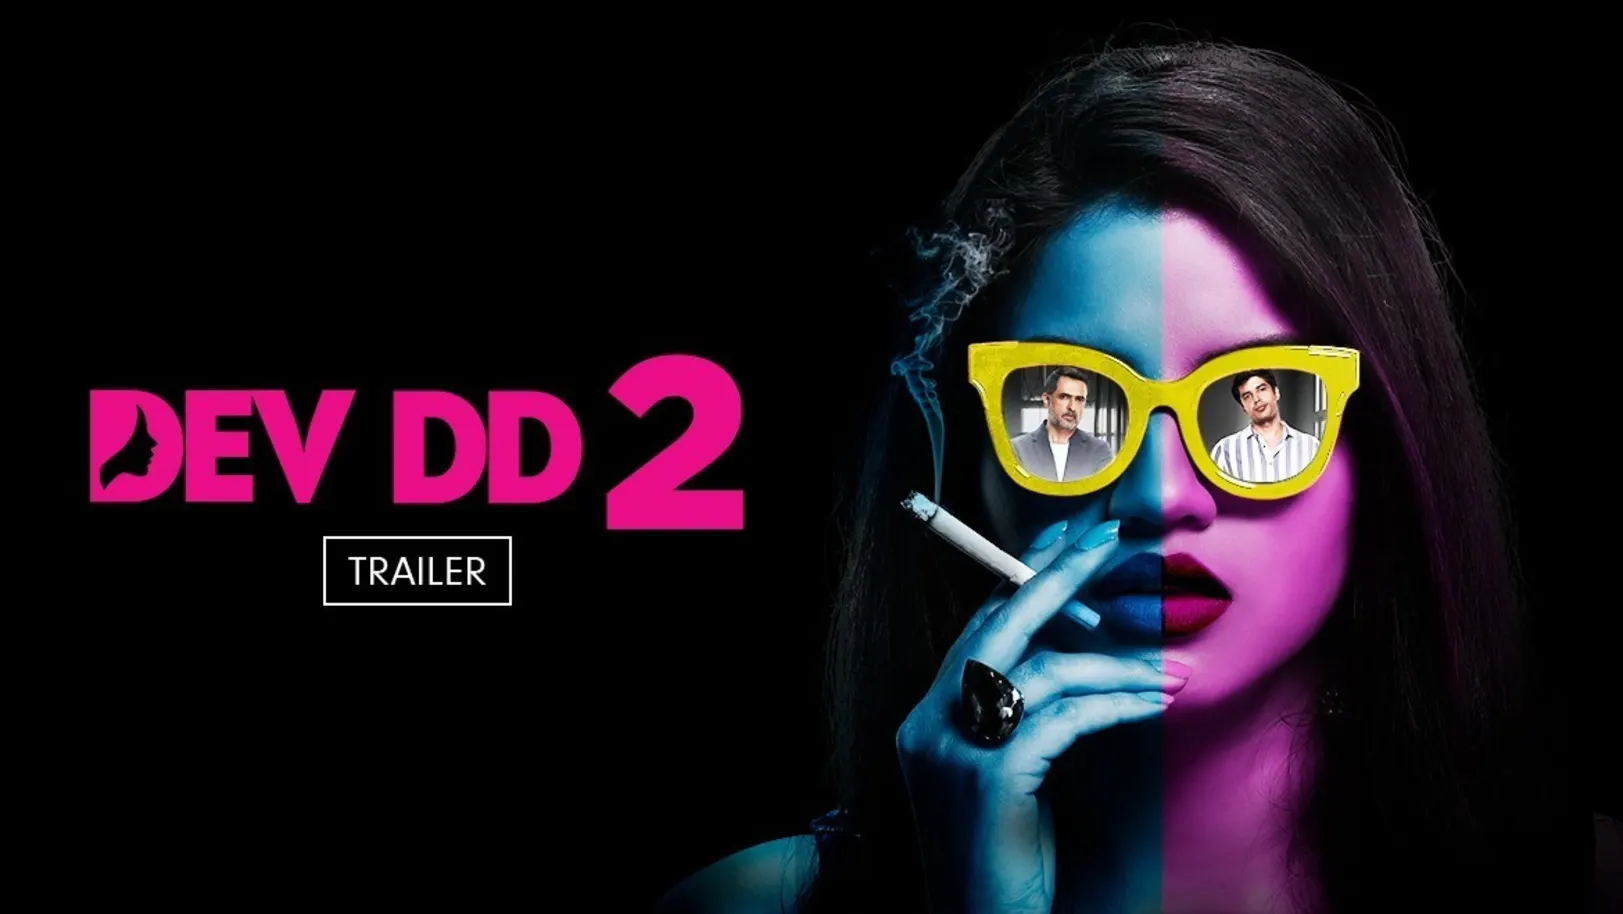 Dev DD 2 | Trailer